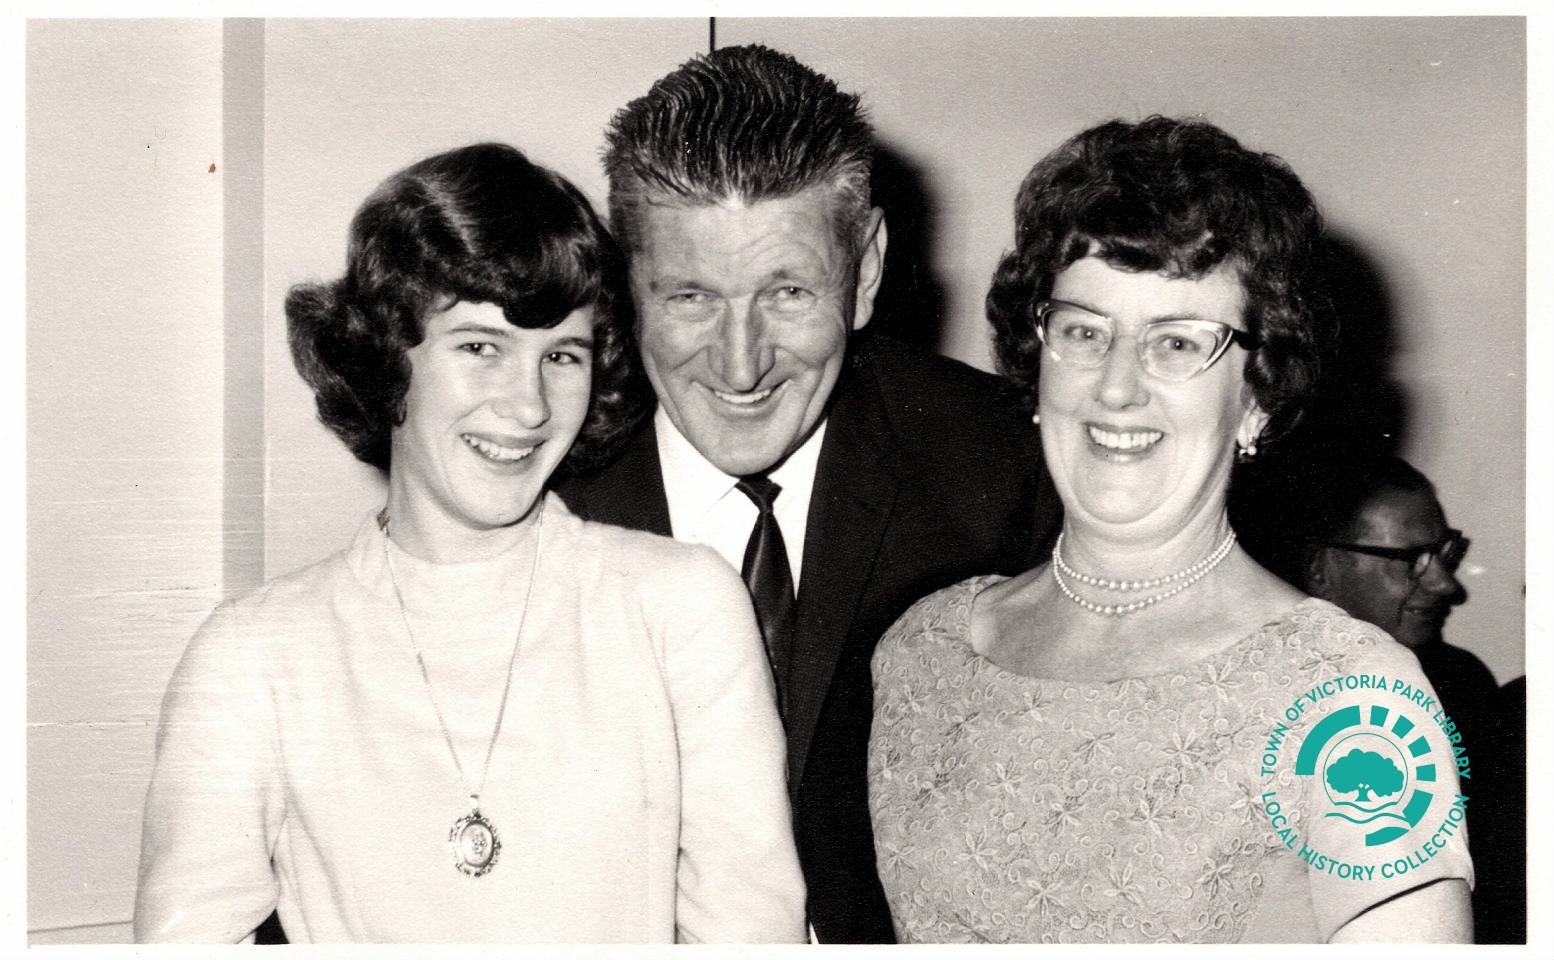 PH00043-01 Kaye, Ken & Irene Stewart, about 1969 Image